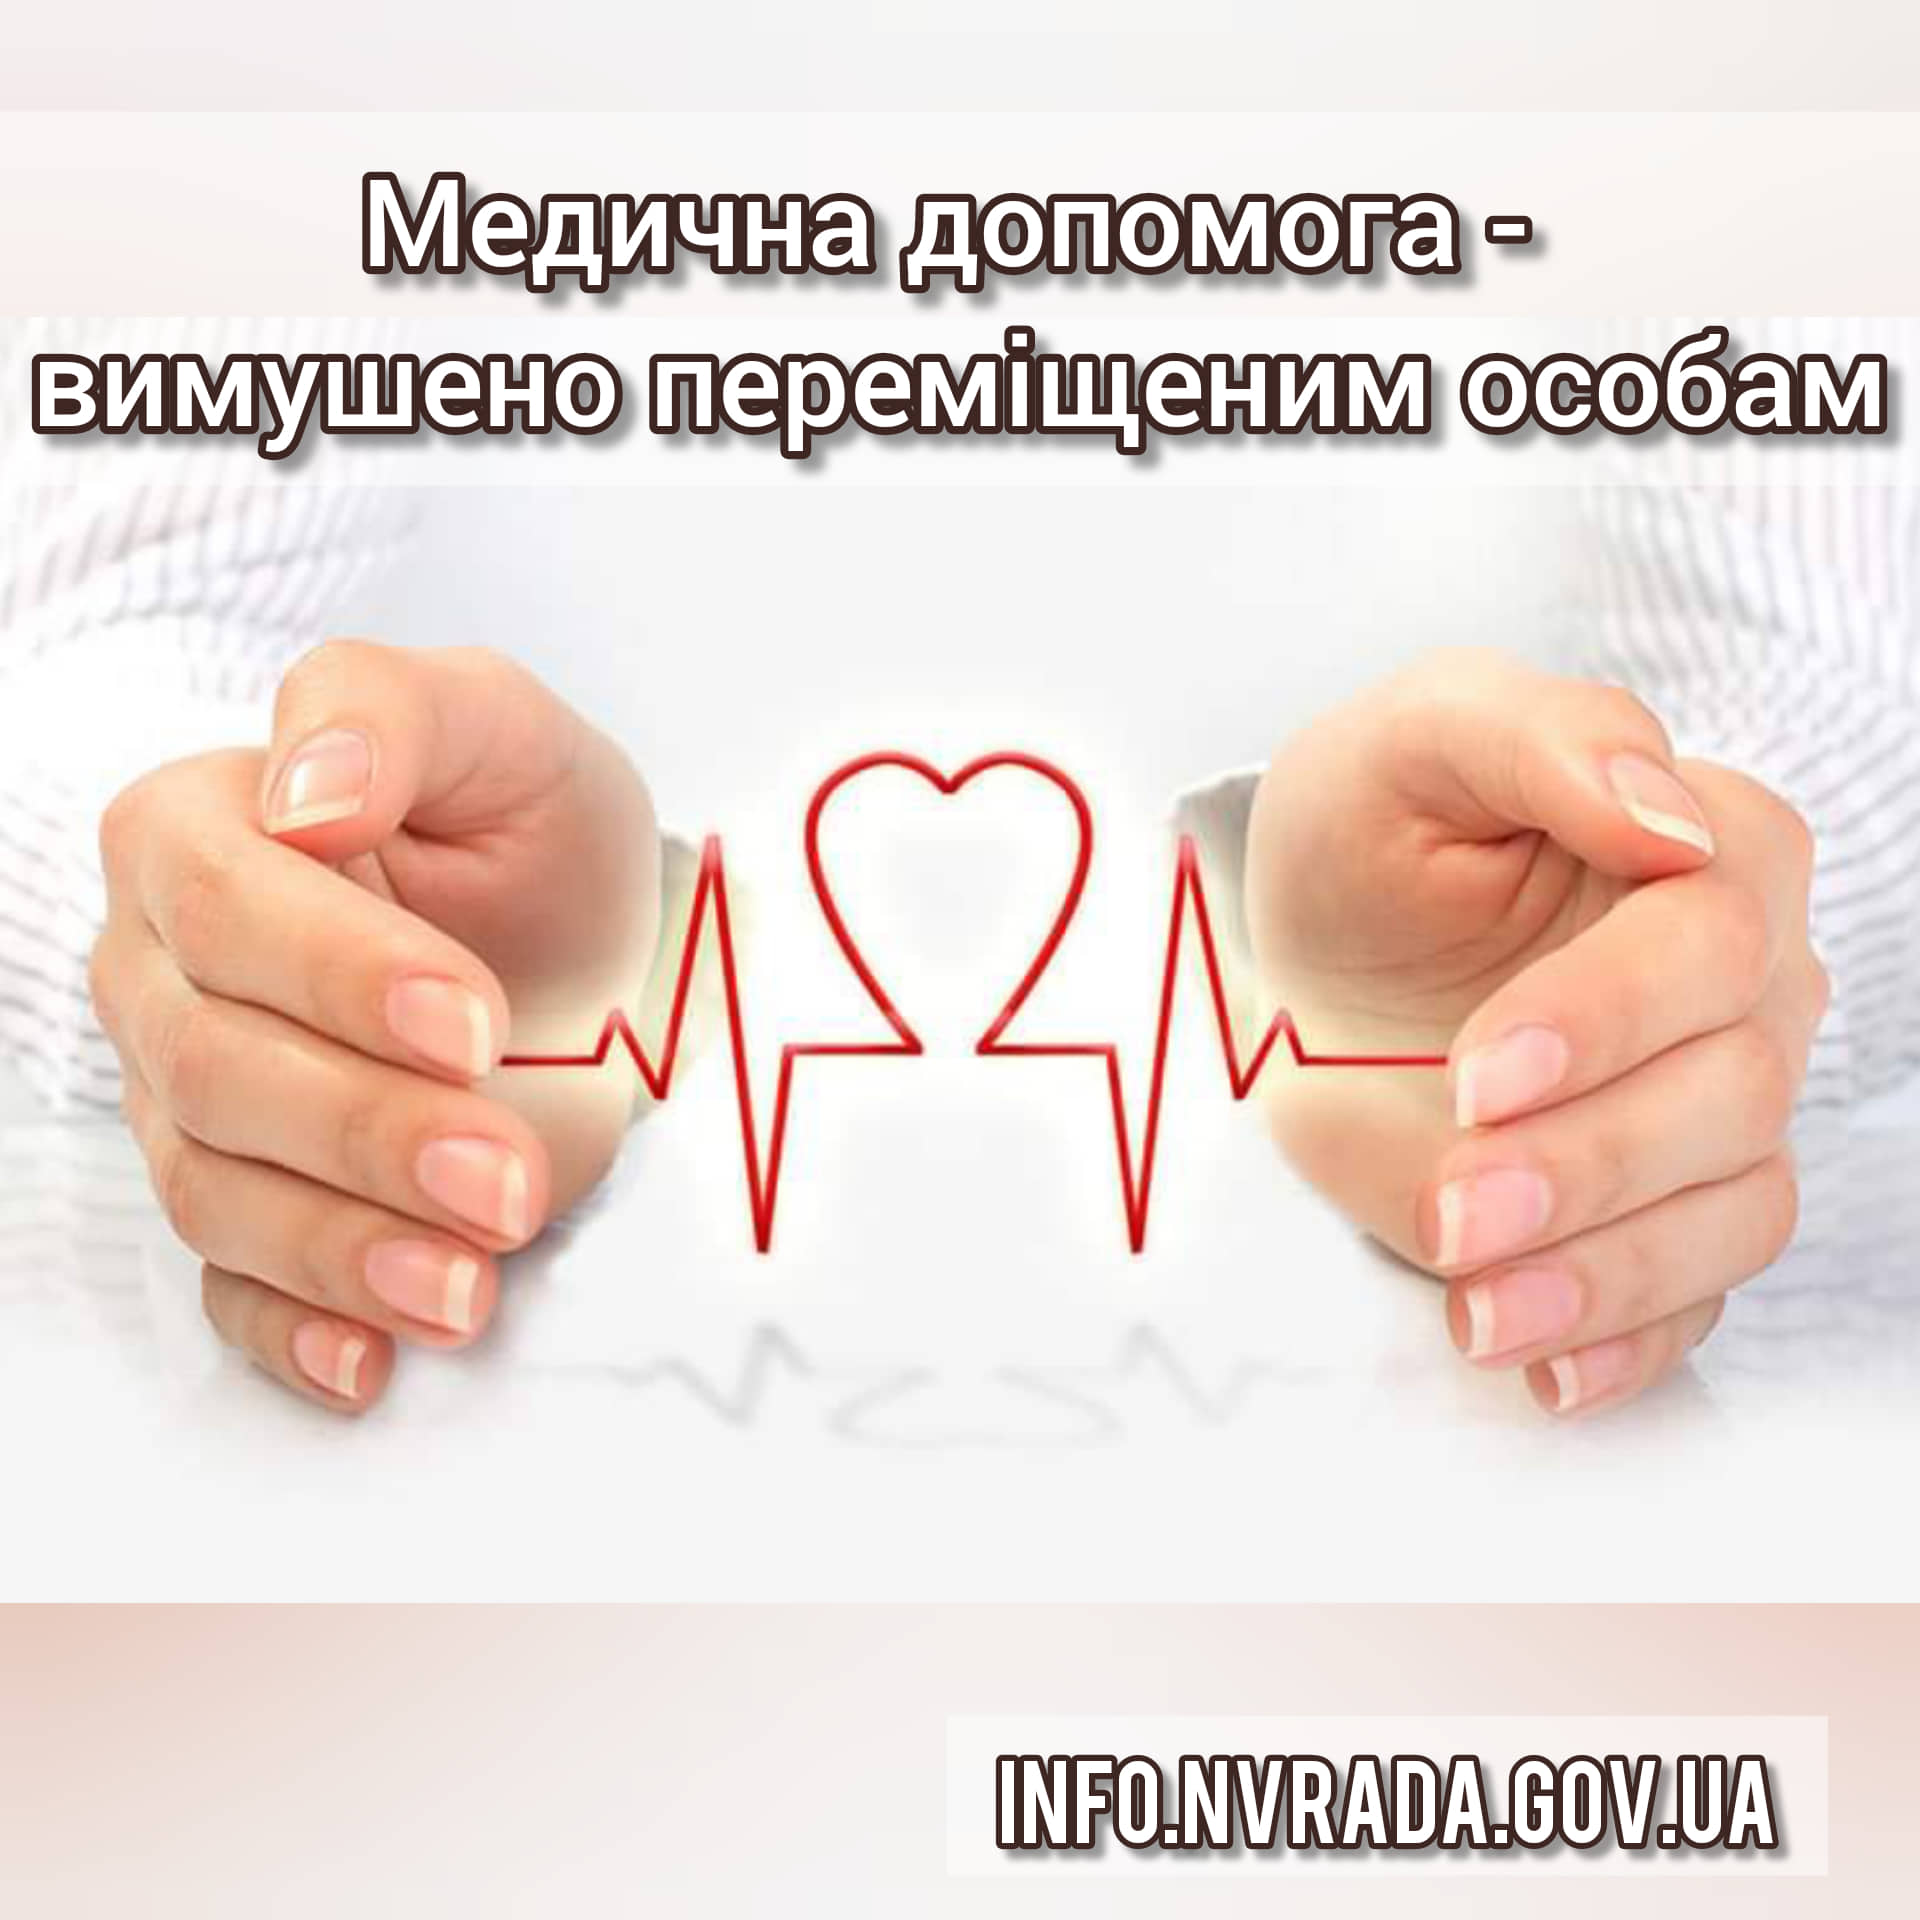 Яку медичну допомогу отримали у закладах охорони здоров’я Новоград-Волинської міської ради  вимушено переміщені особи?